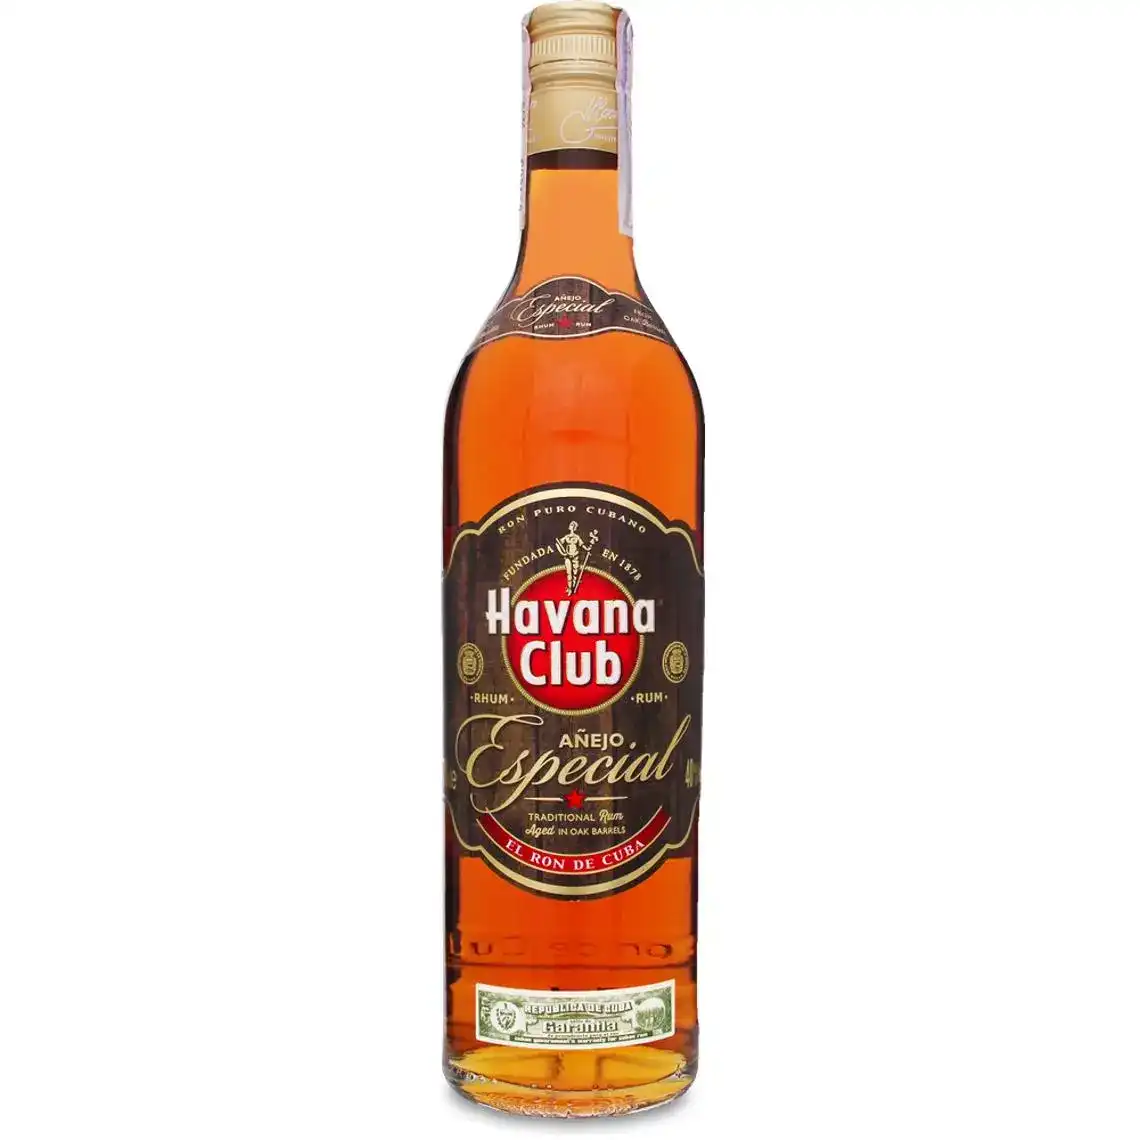 Ром Havana Club Anejo Especial 3 роки витримки 40% 0.7 л